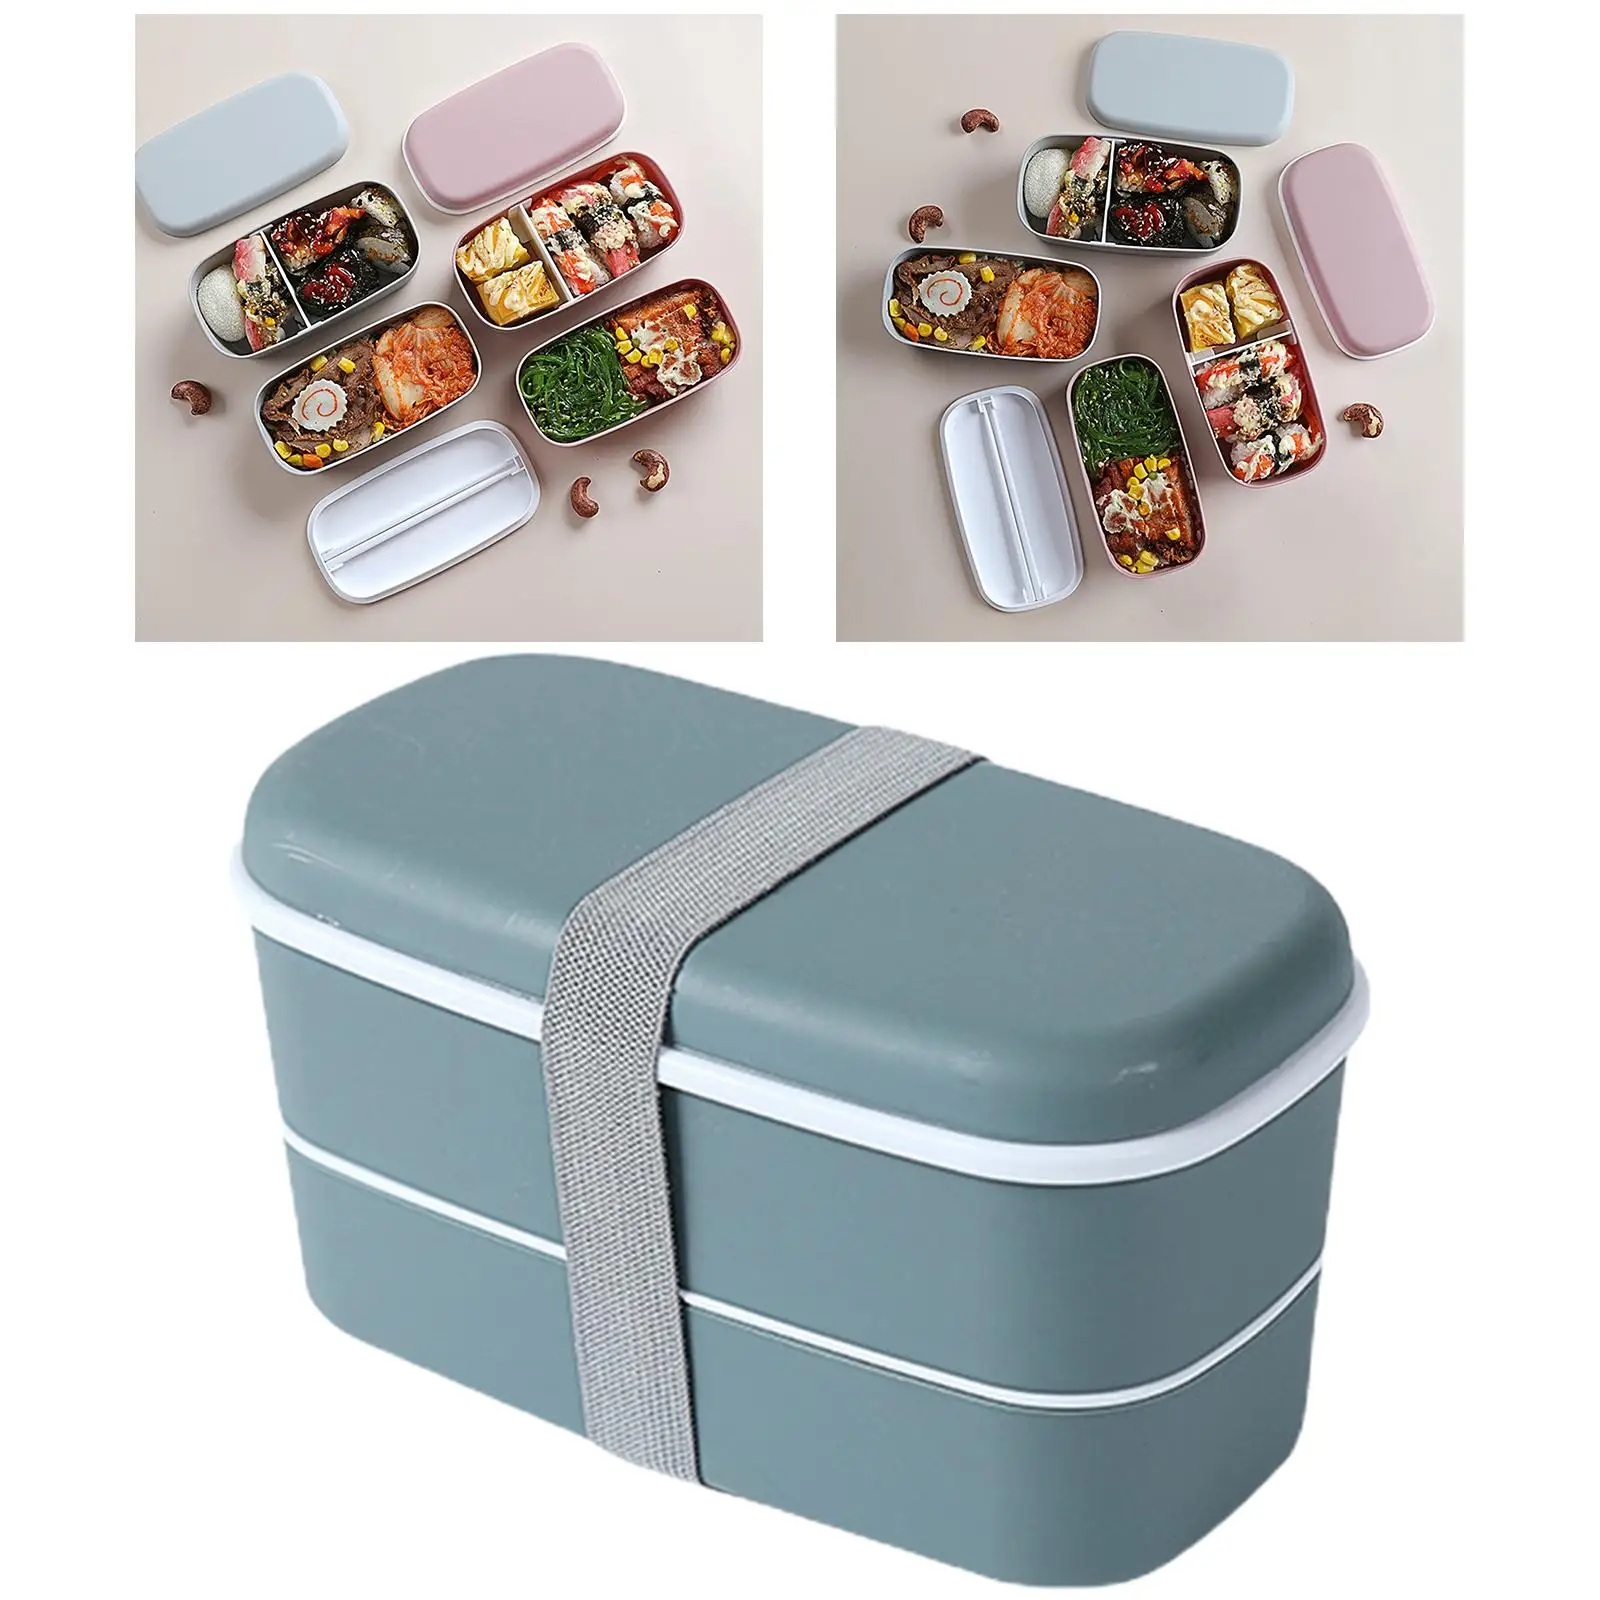 Ланч-бокс, многофункциональный портативный контейнер для суши, можно мыть в посудомоечной машине, для пикника, Походов, Кемпинга, школы